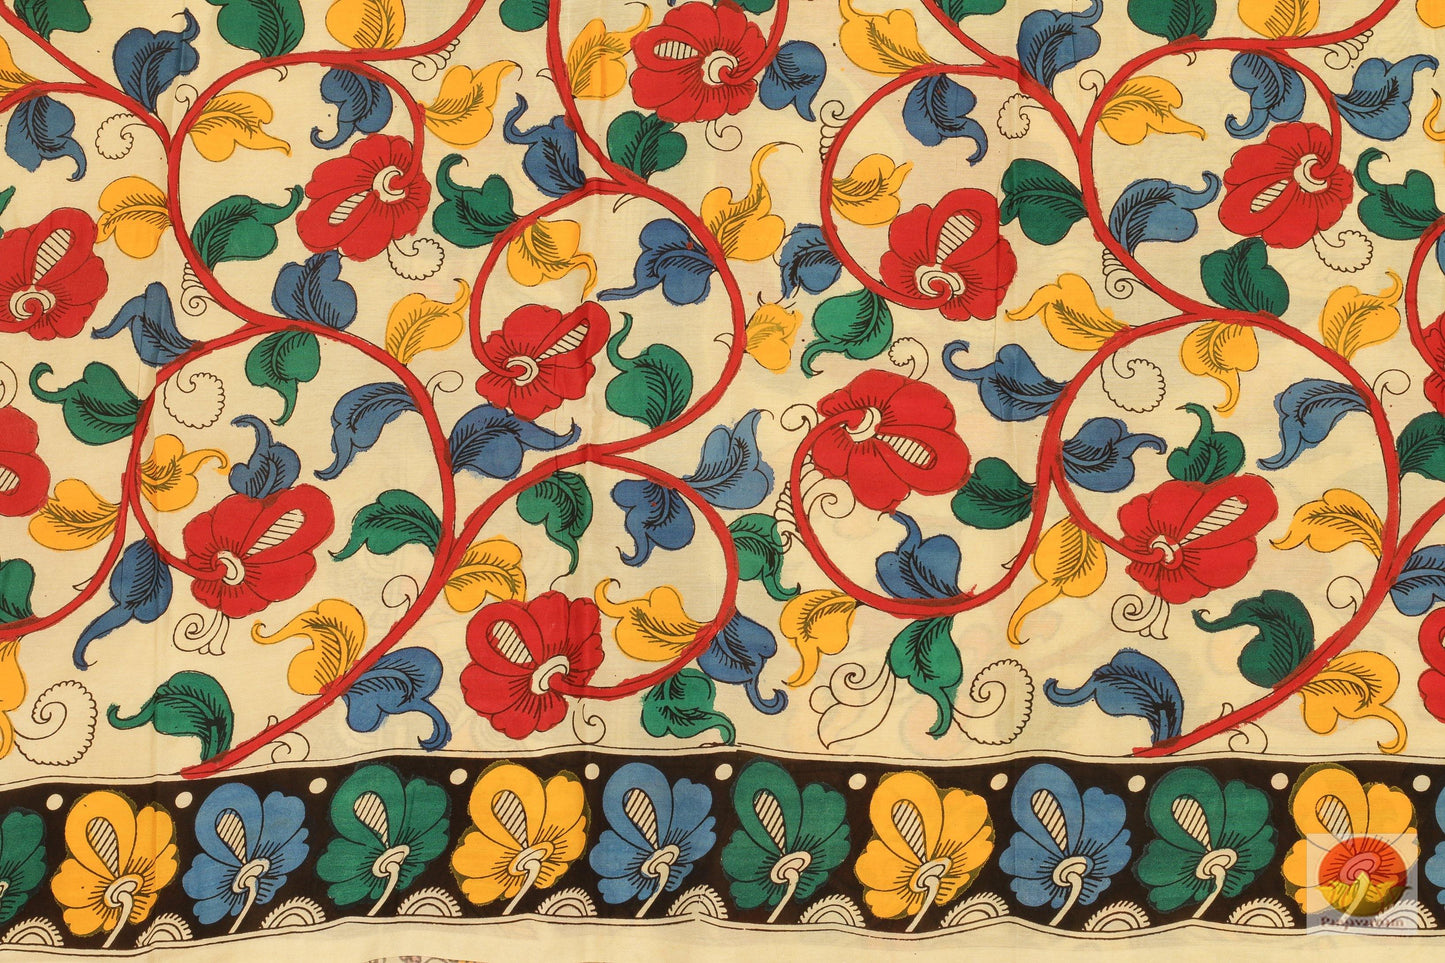 Handpainted Kalamkari Silk Saree - Organic Dyes - PKM 240 Archives - Kalamkari Silk - Panjavarnam